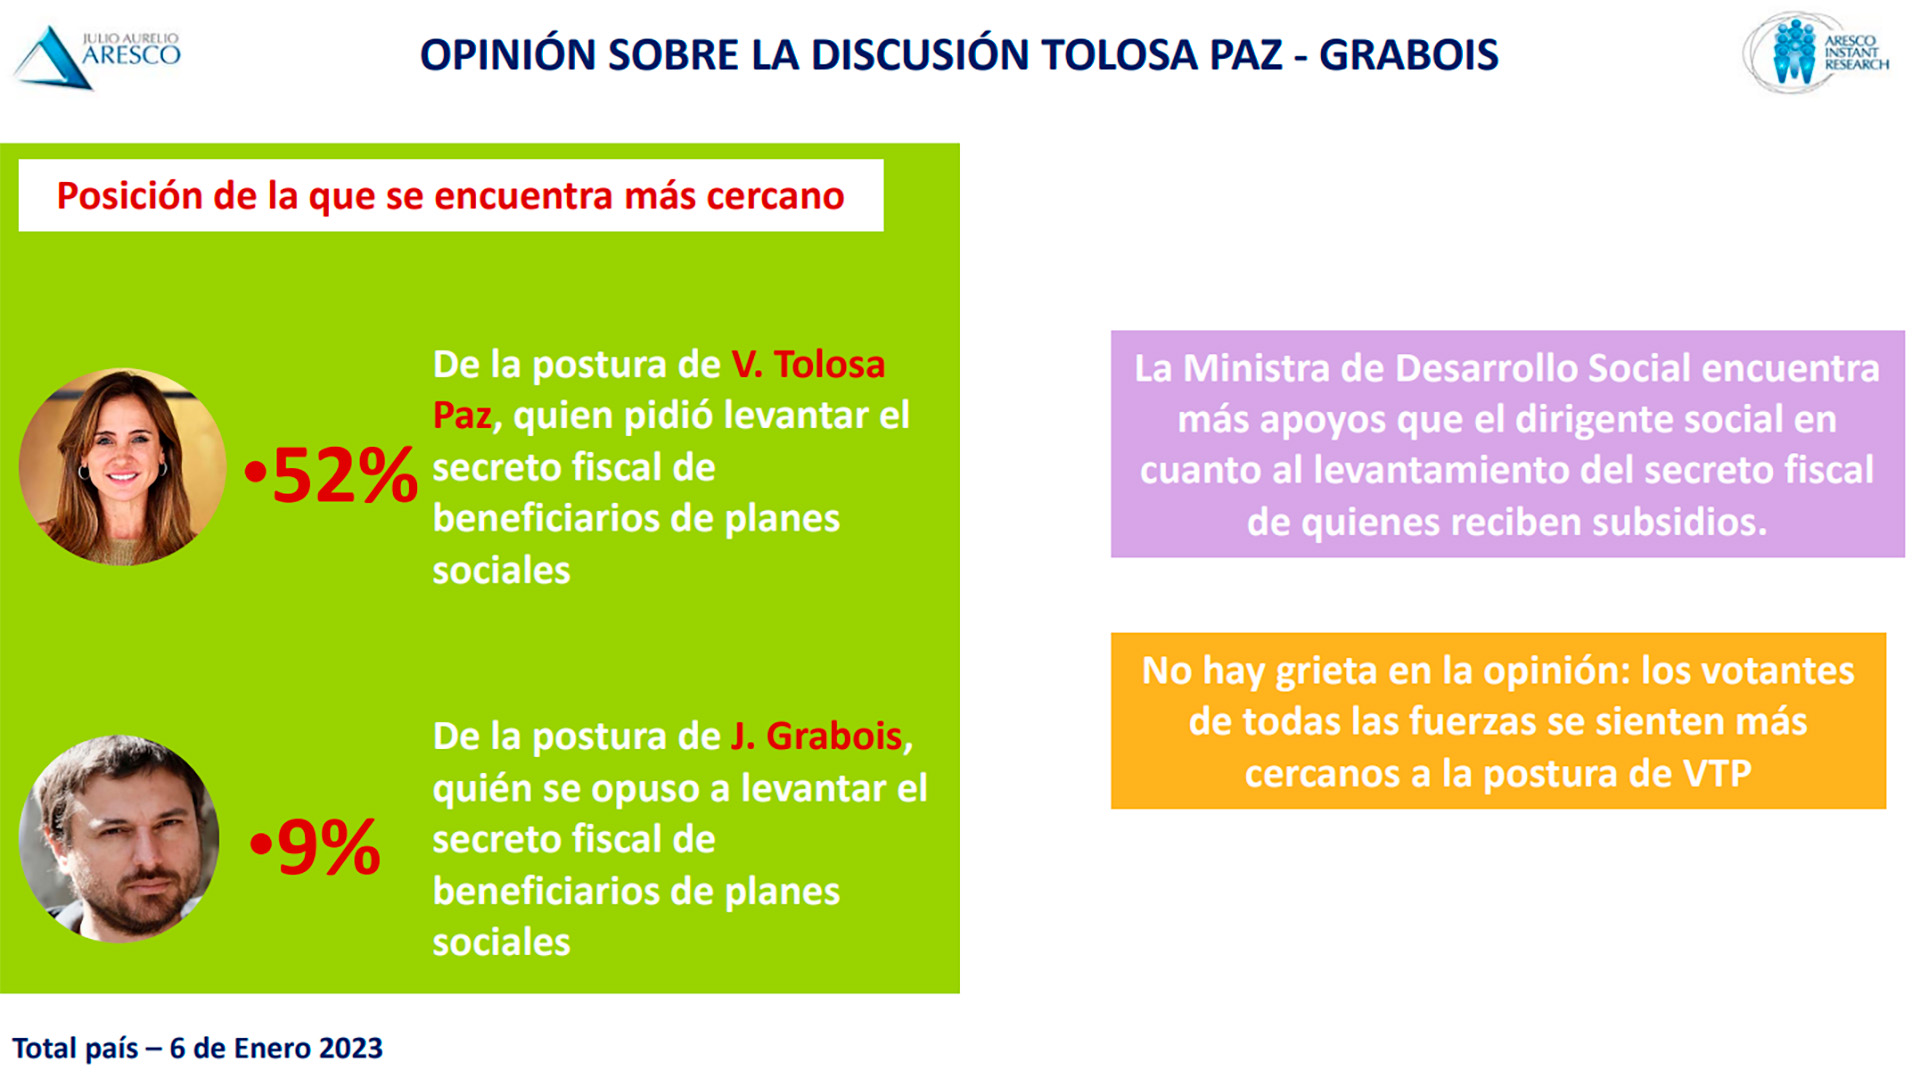 La opinión de los encuestados respecto al contrapunto entre Tolosa Paz y Grabois. 